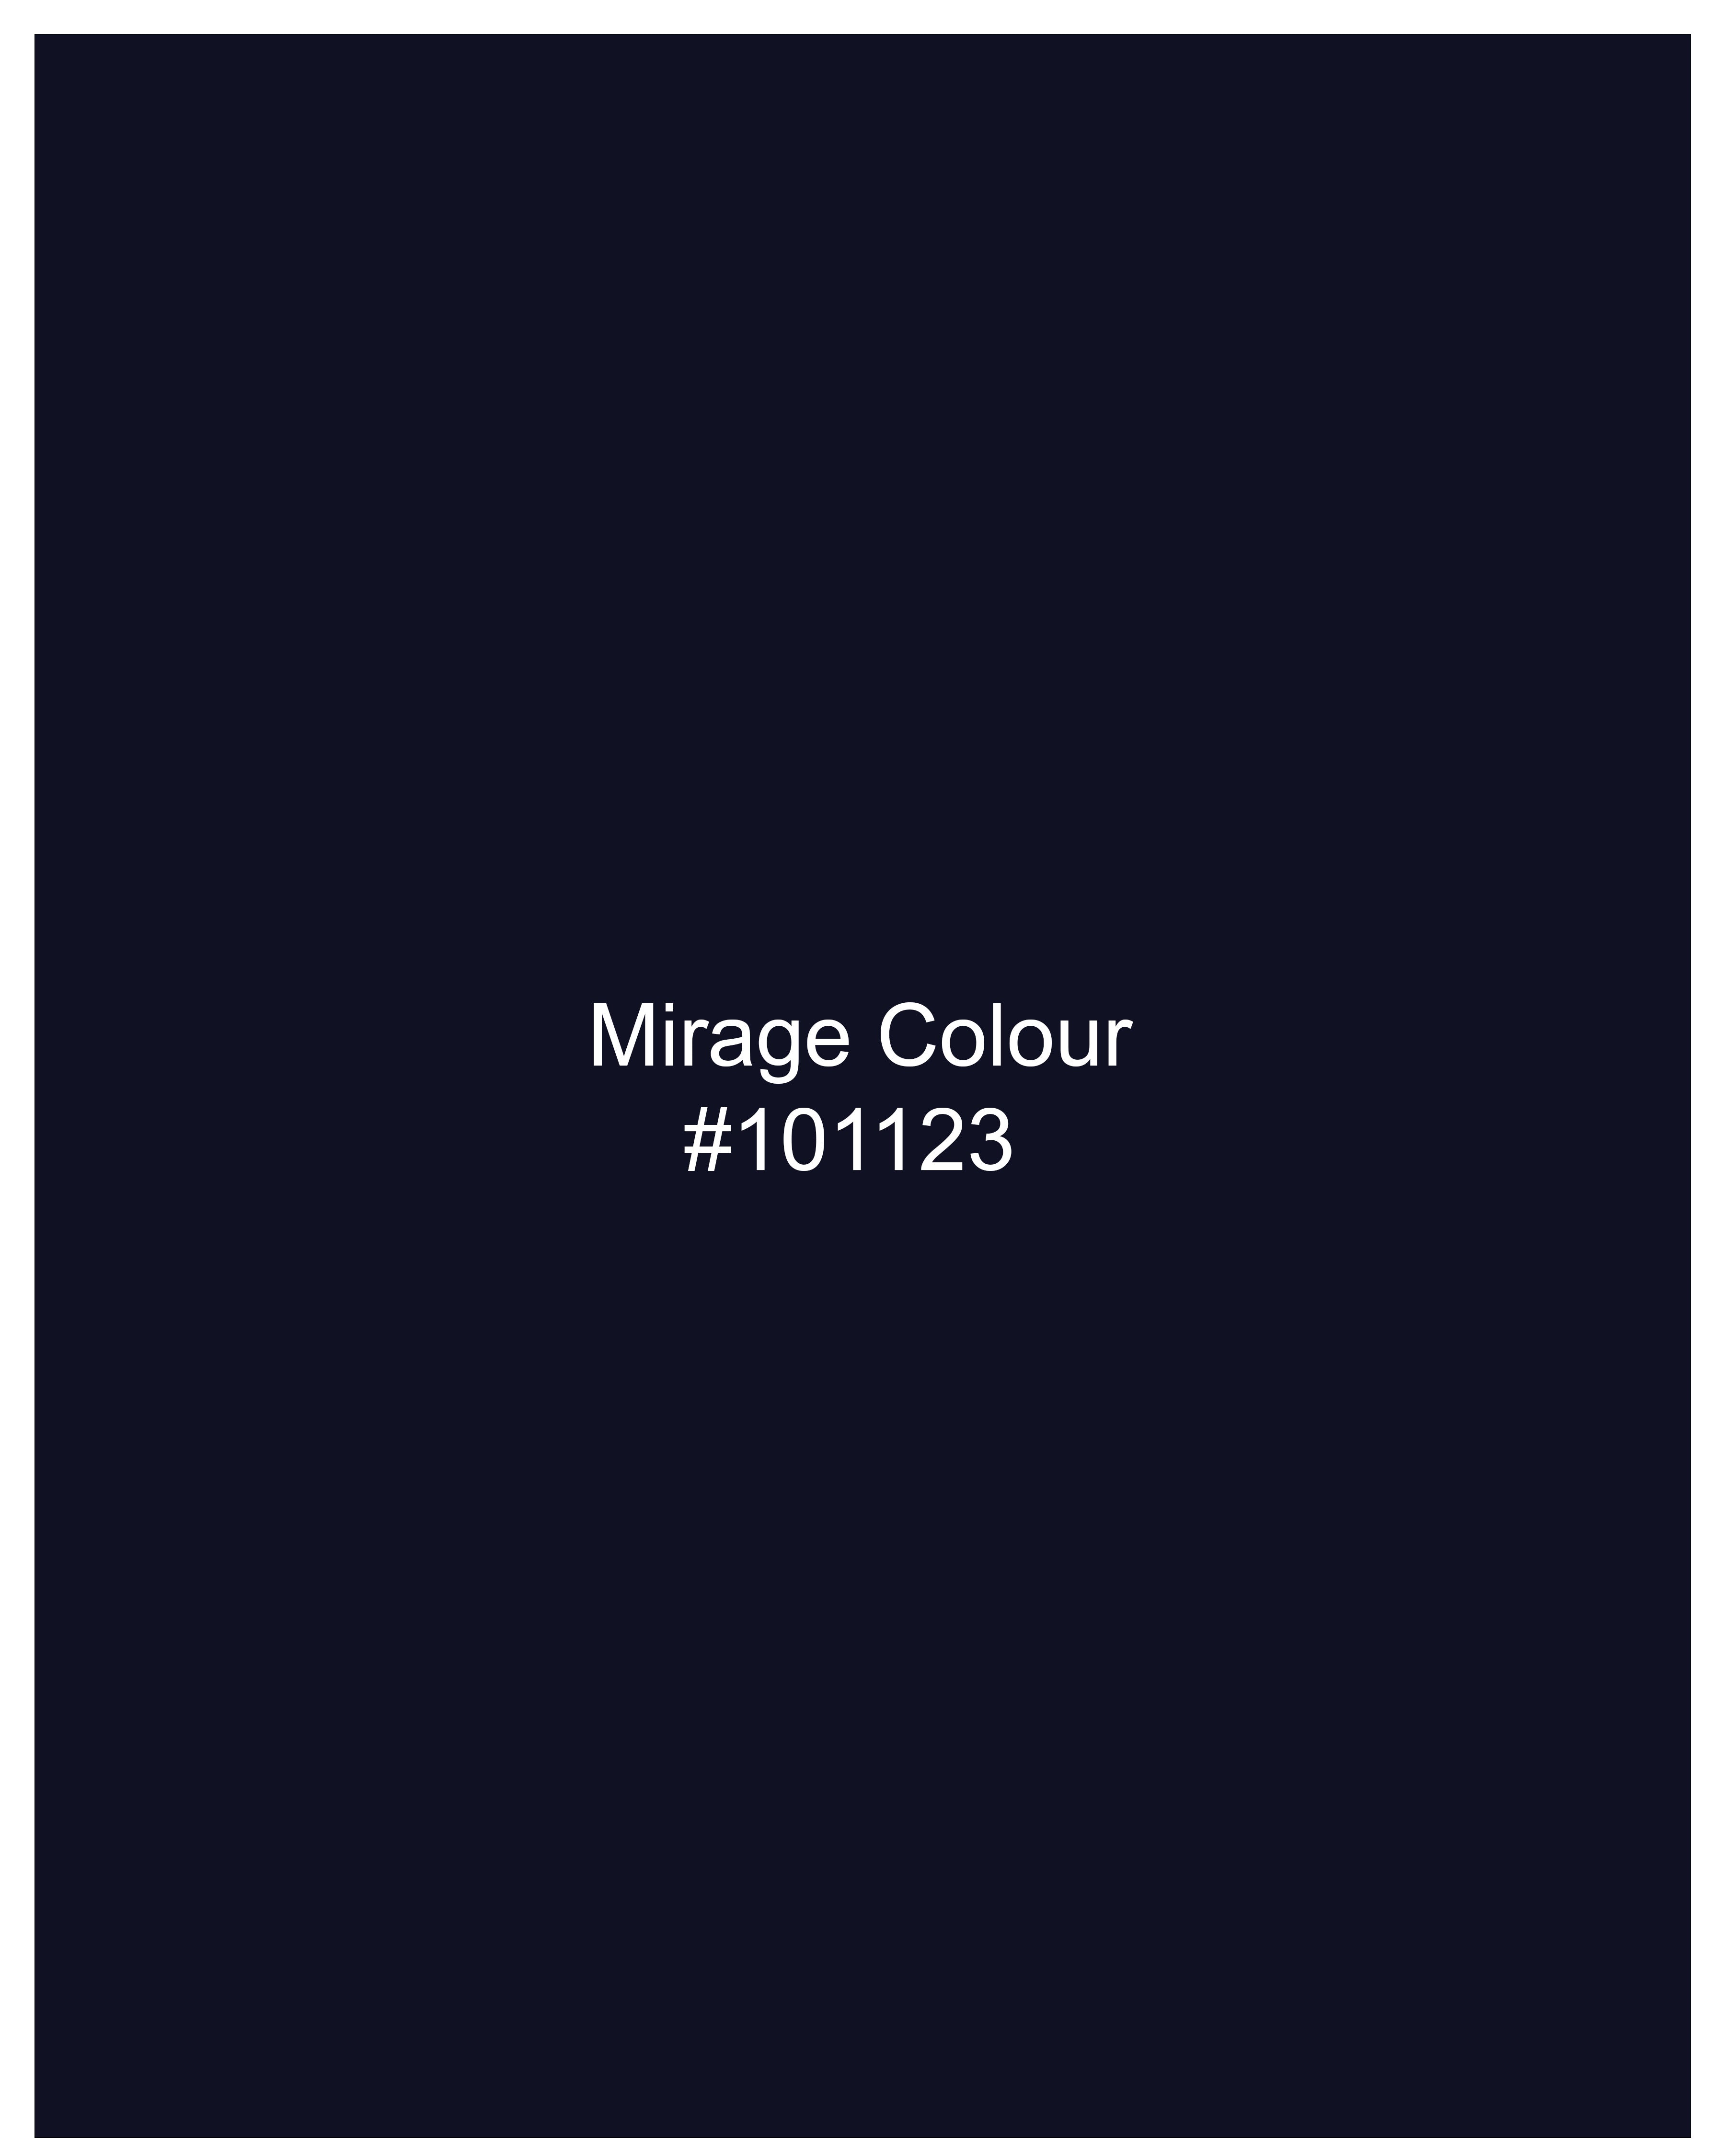 Mirage Navy Blue Flannel Designer Shirt 9241-P287-38,9241-P287-H-38,9241-P287-39,9241-P287-H-39,9241-P287-40,9241-P287-H-40,9241-P287-42,9241-P287-H-42,9241-P287-44,9241-P287-H-44,9241-P287-46,9241-P287-H-46,9241-P287-48,9241-P287-H-48,9241-P287-50,9241-P287-H-50,9241-P287-52,9241-P287-H-52